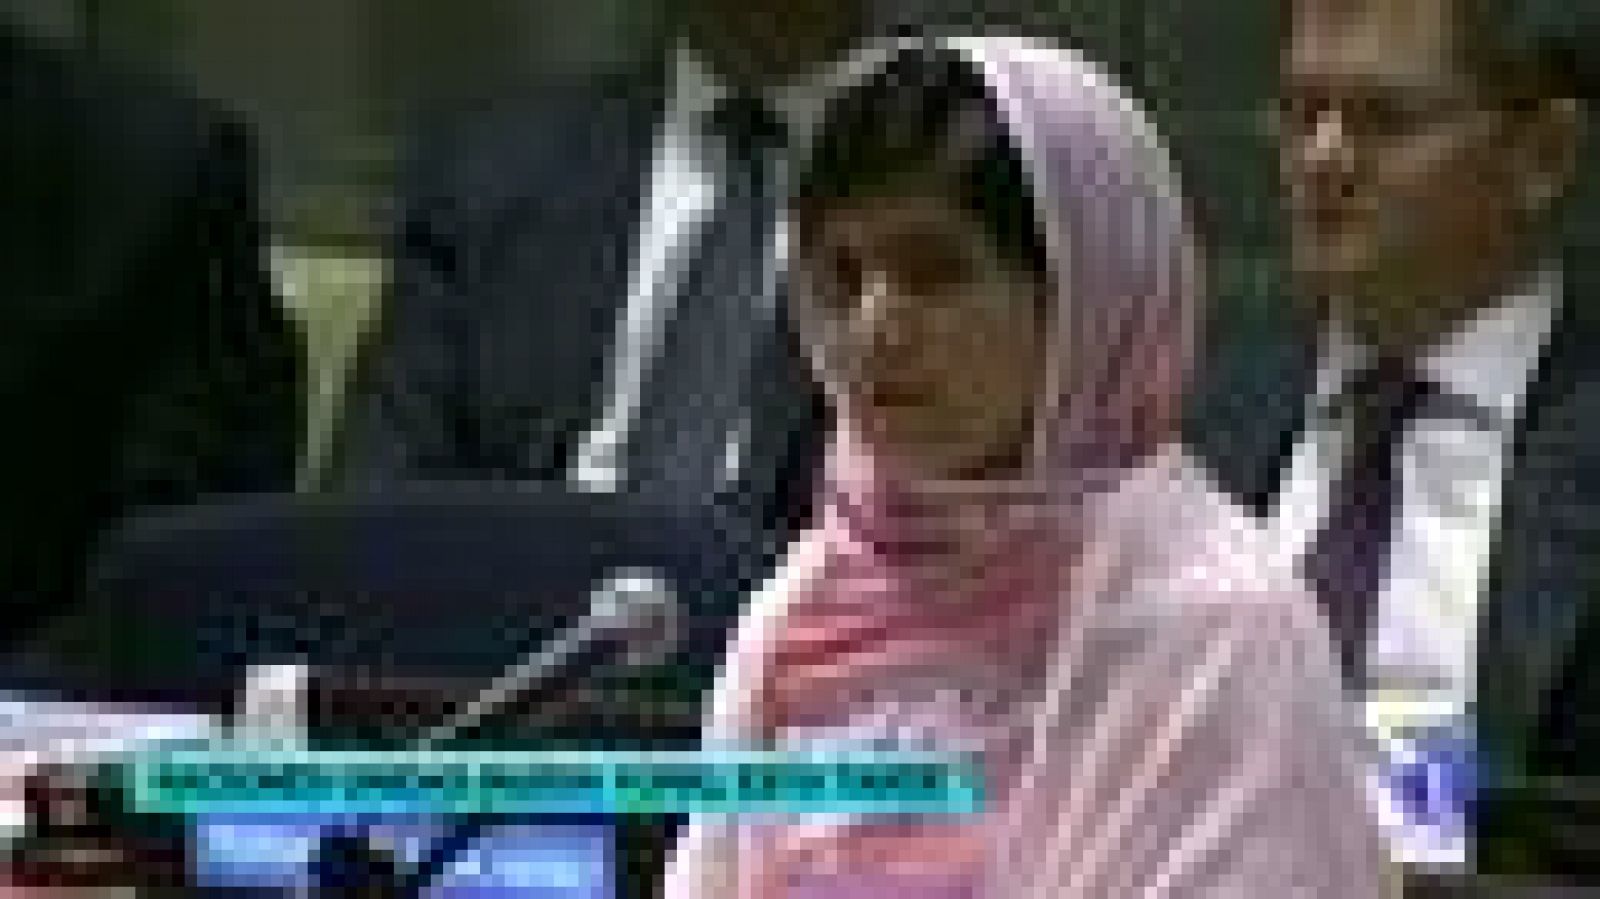 En su primer discurso en público, Malala Yousafzai ha celebrado su 16º cumpleaños defendiendo el derecho universal a la educación. "Hoy no es mi día, no es el día de Malala. Es el día de cada mujer y cada hombre que arriesga su vida por los derechos humanos", ha reivindicado en la ONU.